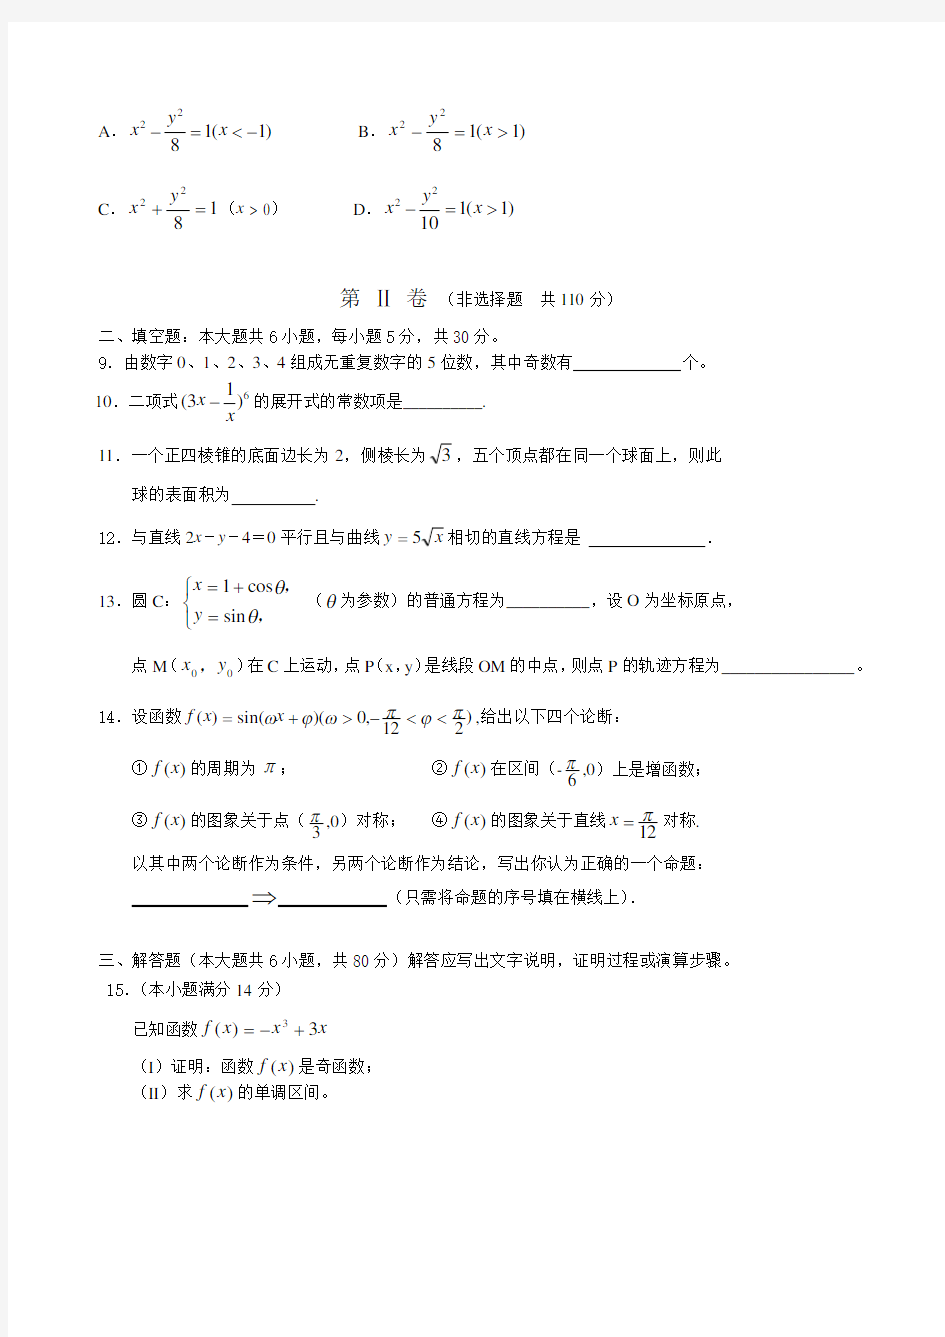 2020年广东高考数学测试题(理科)